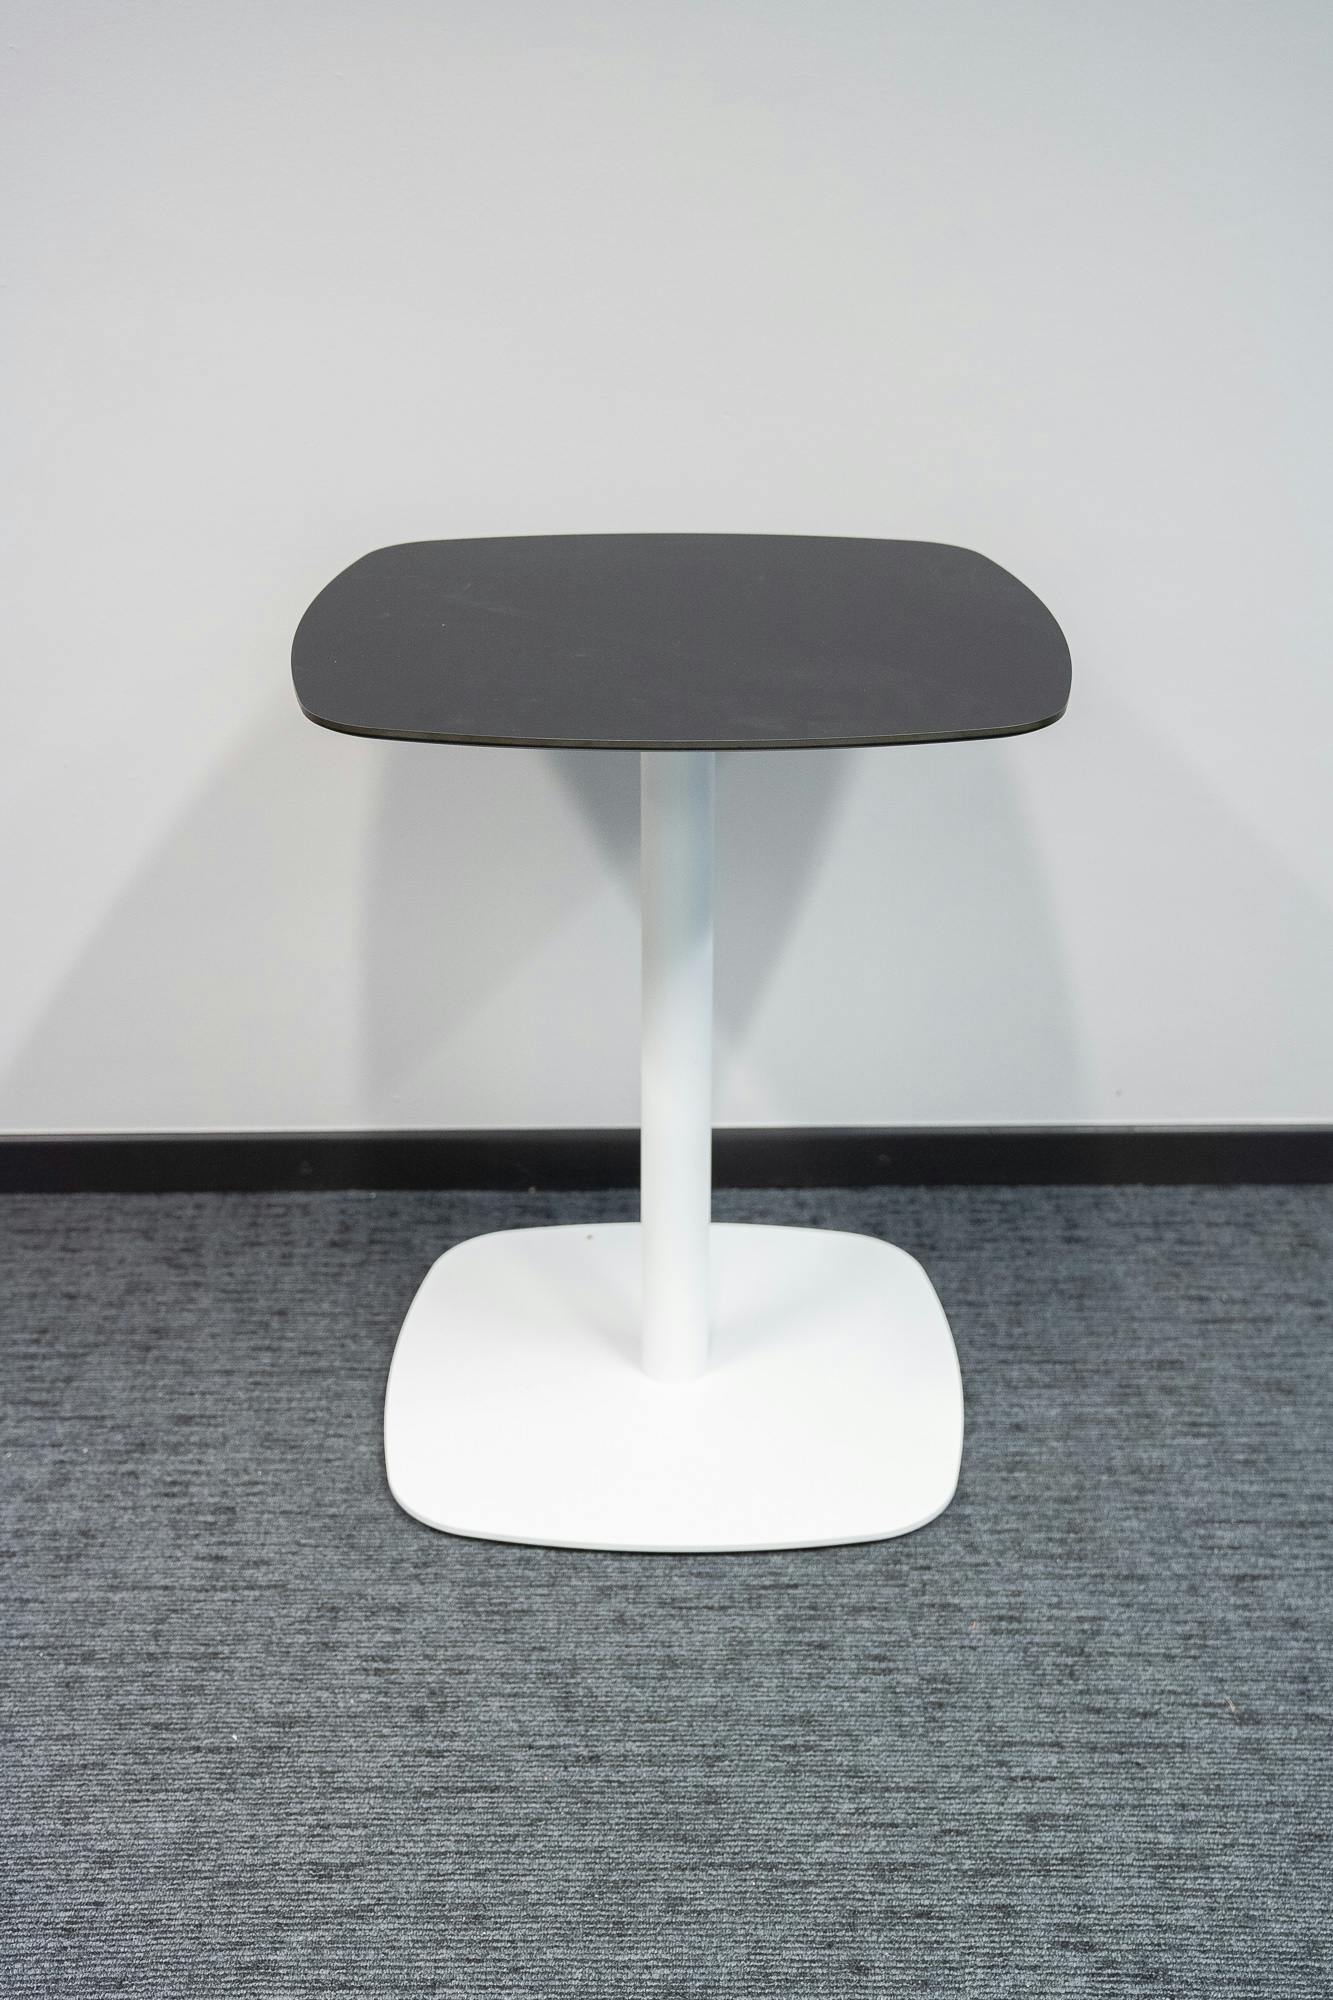 Zwart en wit vierkant ijzeren tafeltje ontworpen door Estudi Manel Molina - Relieve Furniture